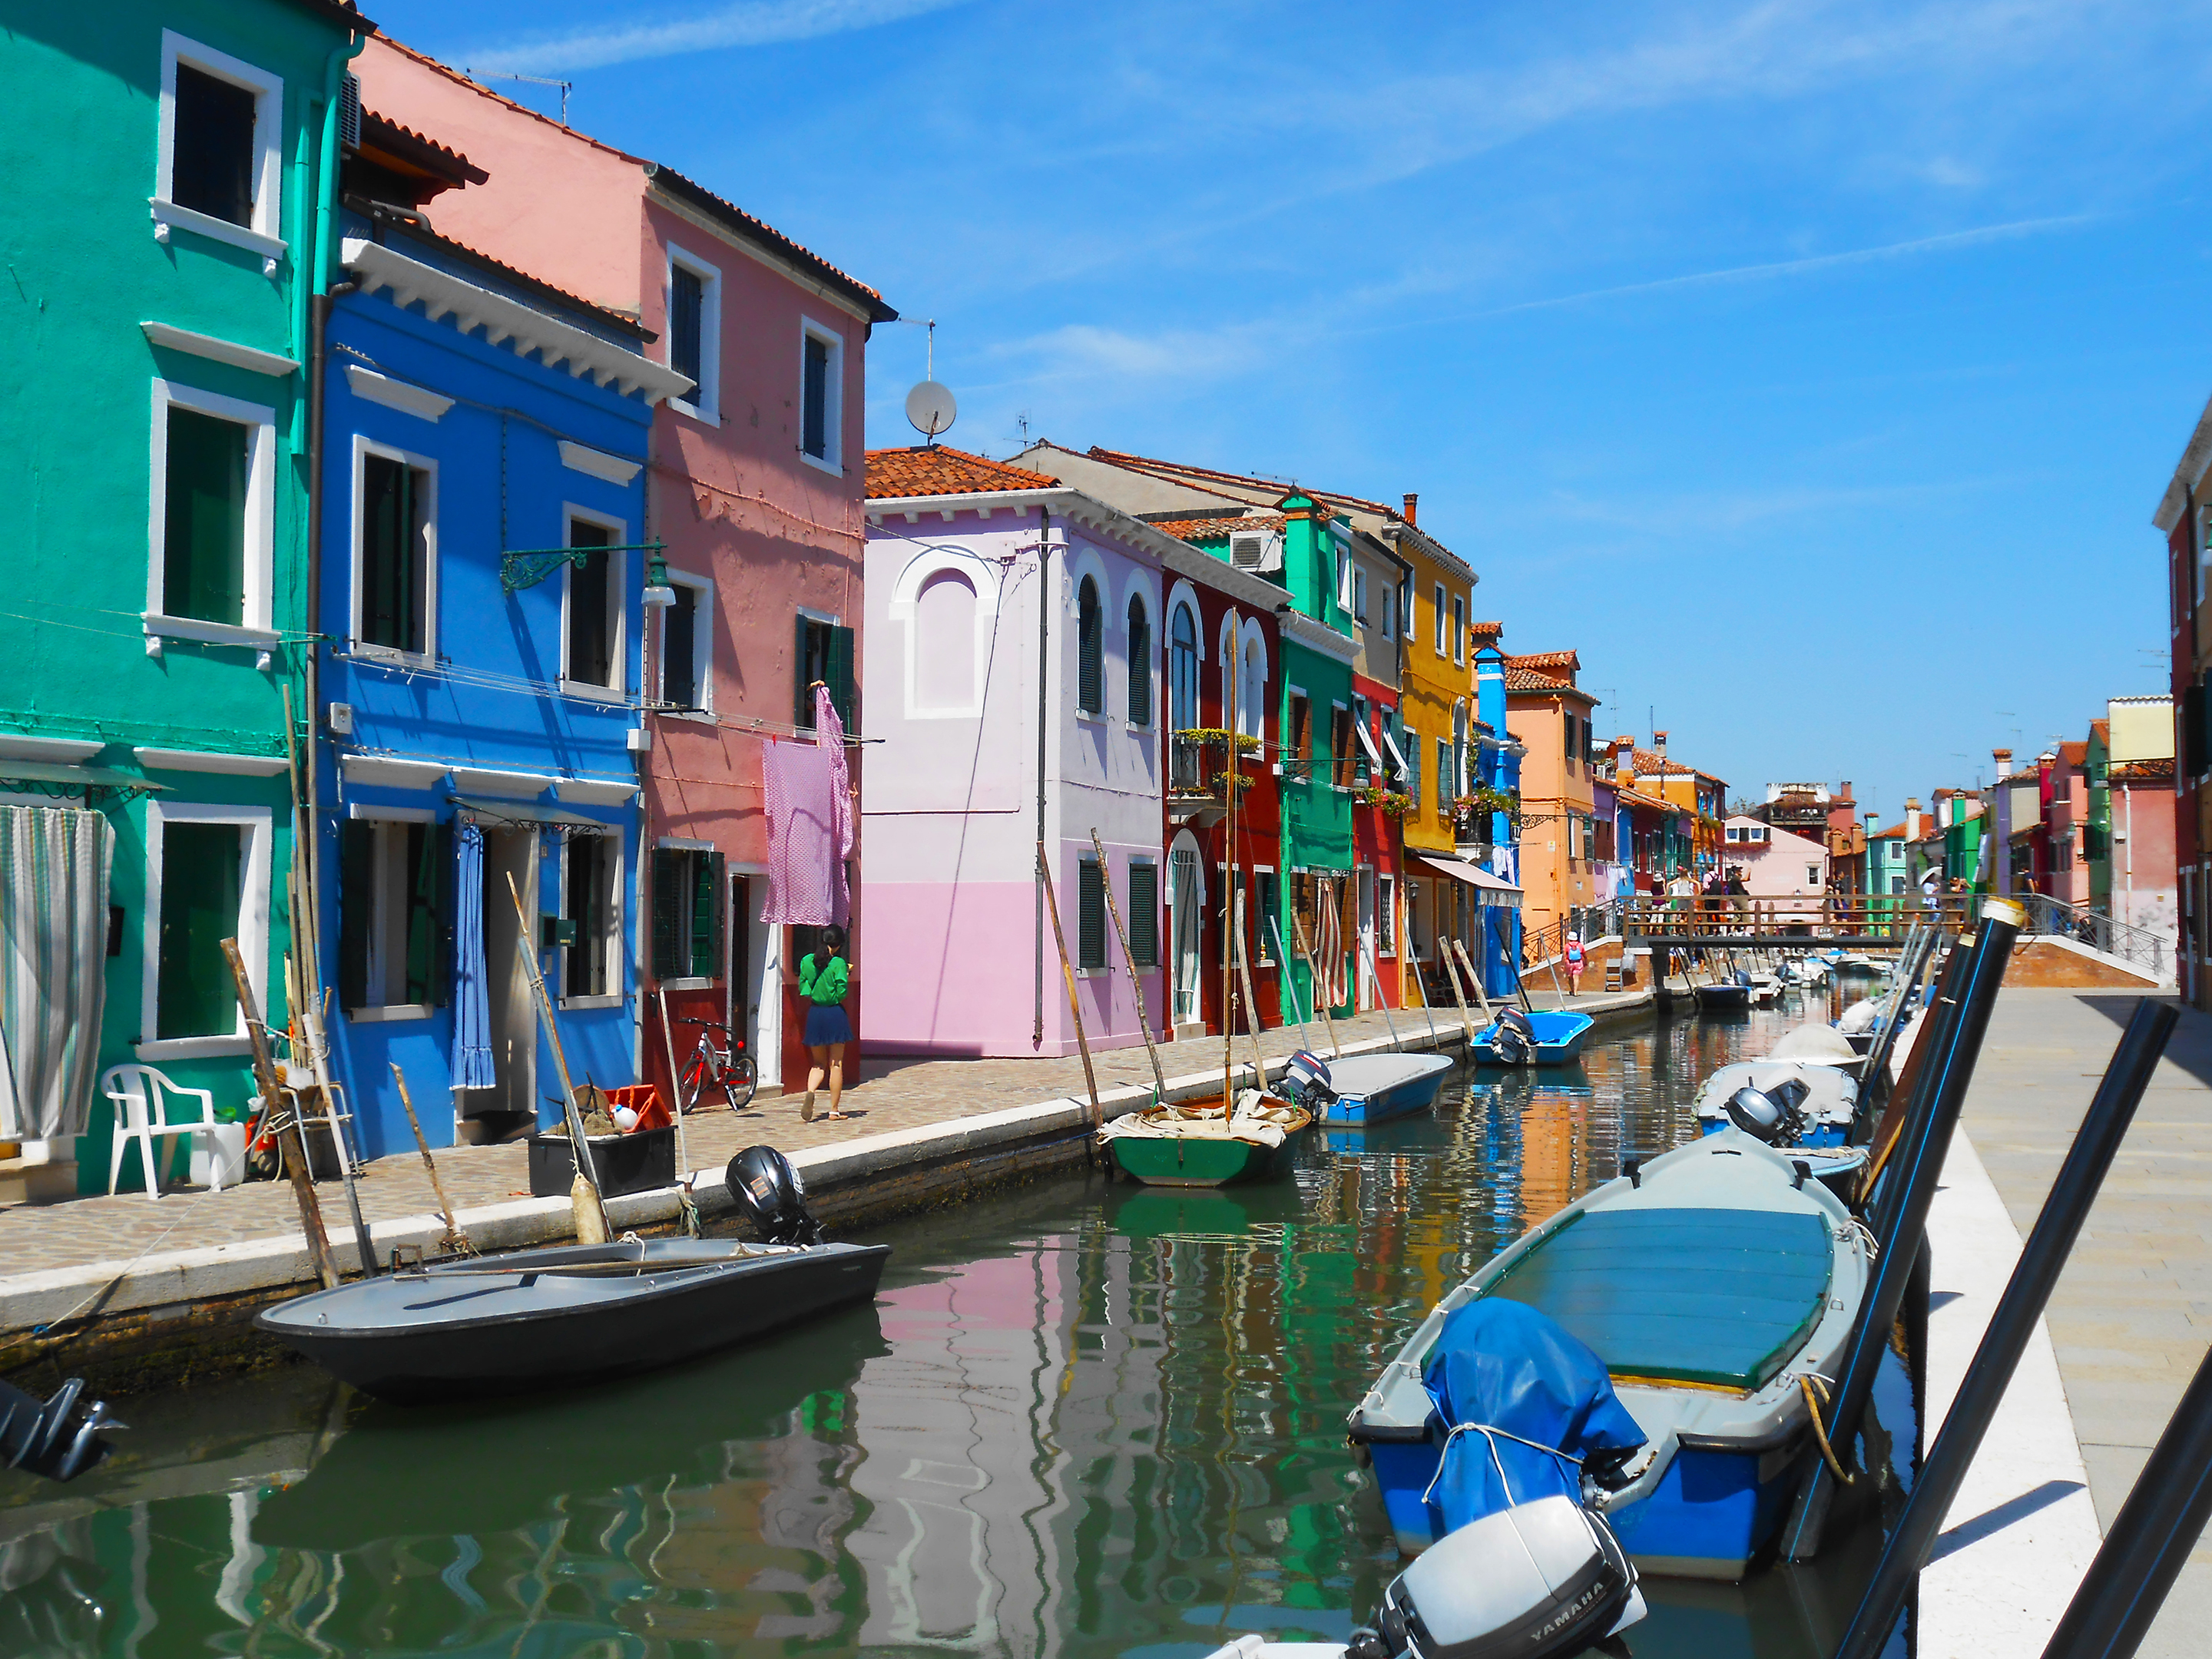 La très colorée Burano, une des îles proche de Venise